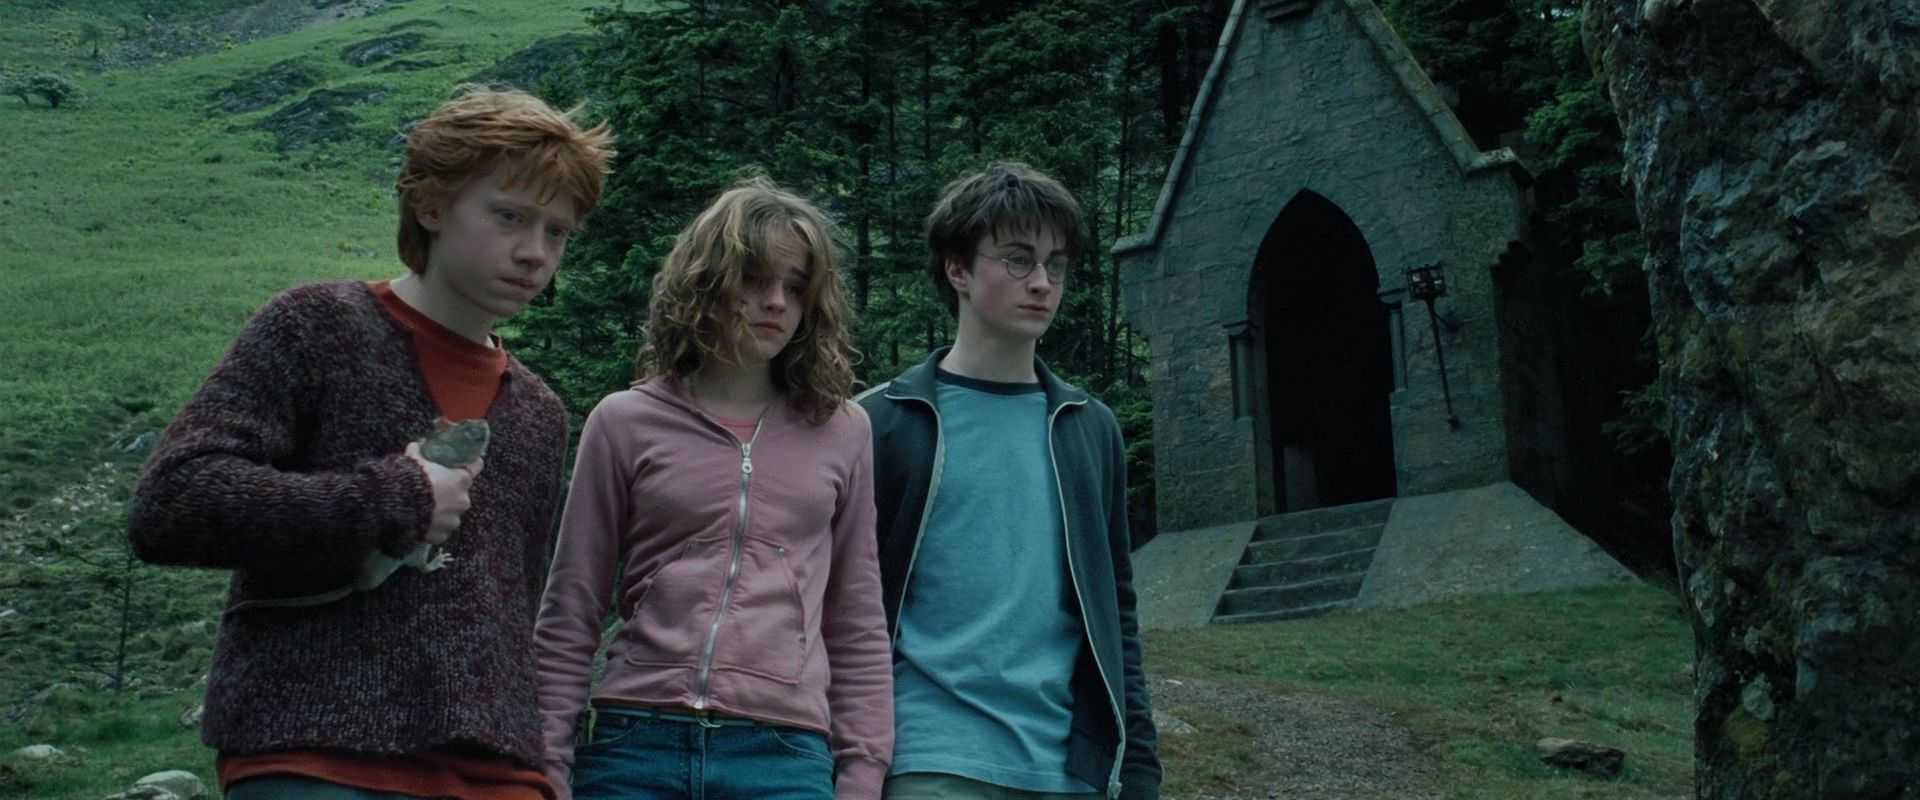 Книги и фильмы о Гарри Поттере стали уникальным культурным явлением, покорившим не одно поколение Многие считают, что весь волшебный мир Джоан Роулинг является исключительно плодом ее фантазии, но на самом деле многие идеи, которые писательница использова